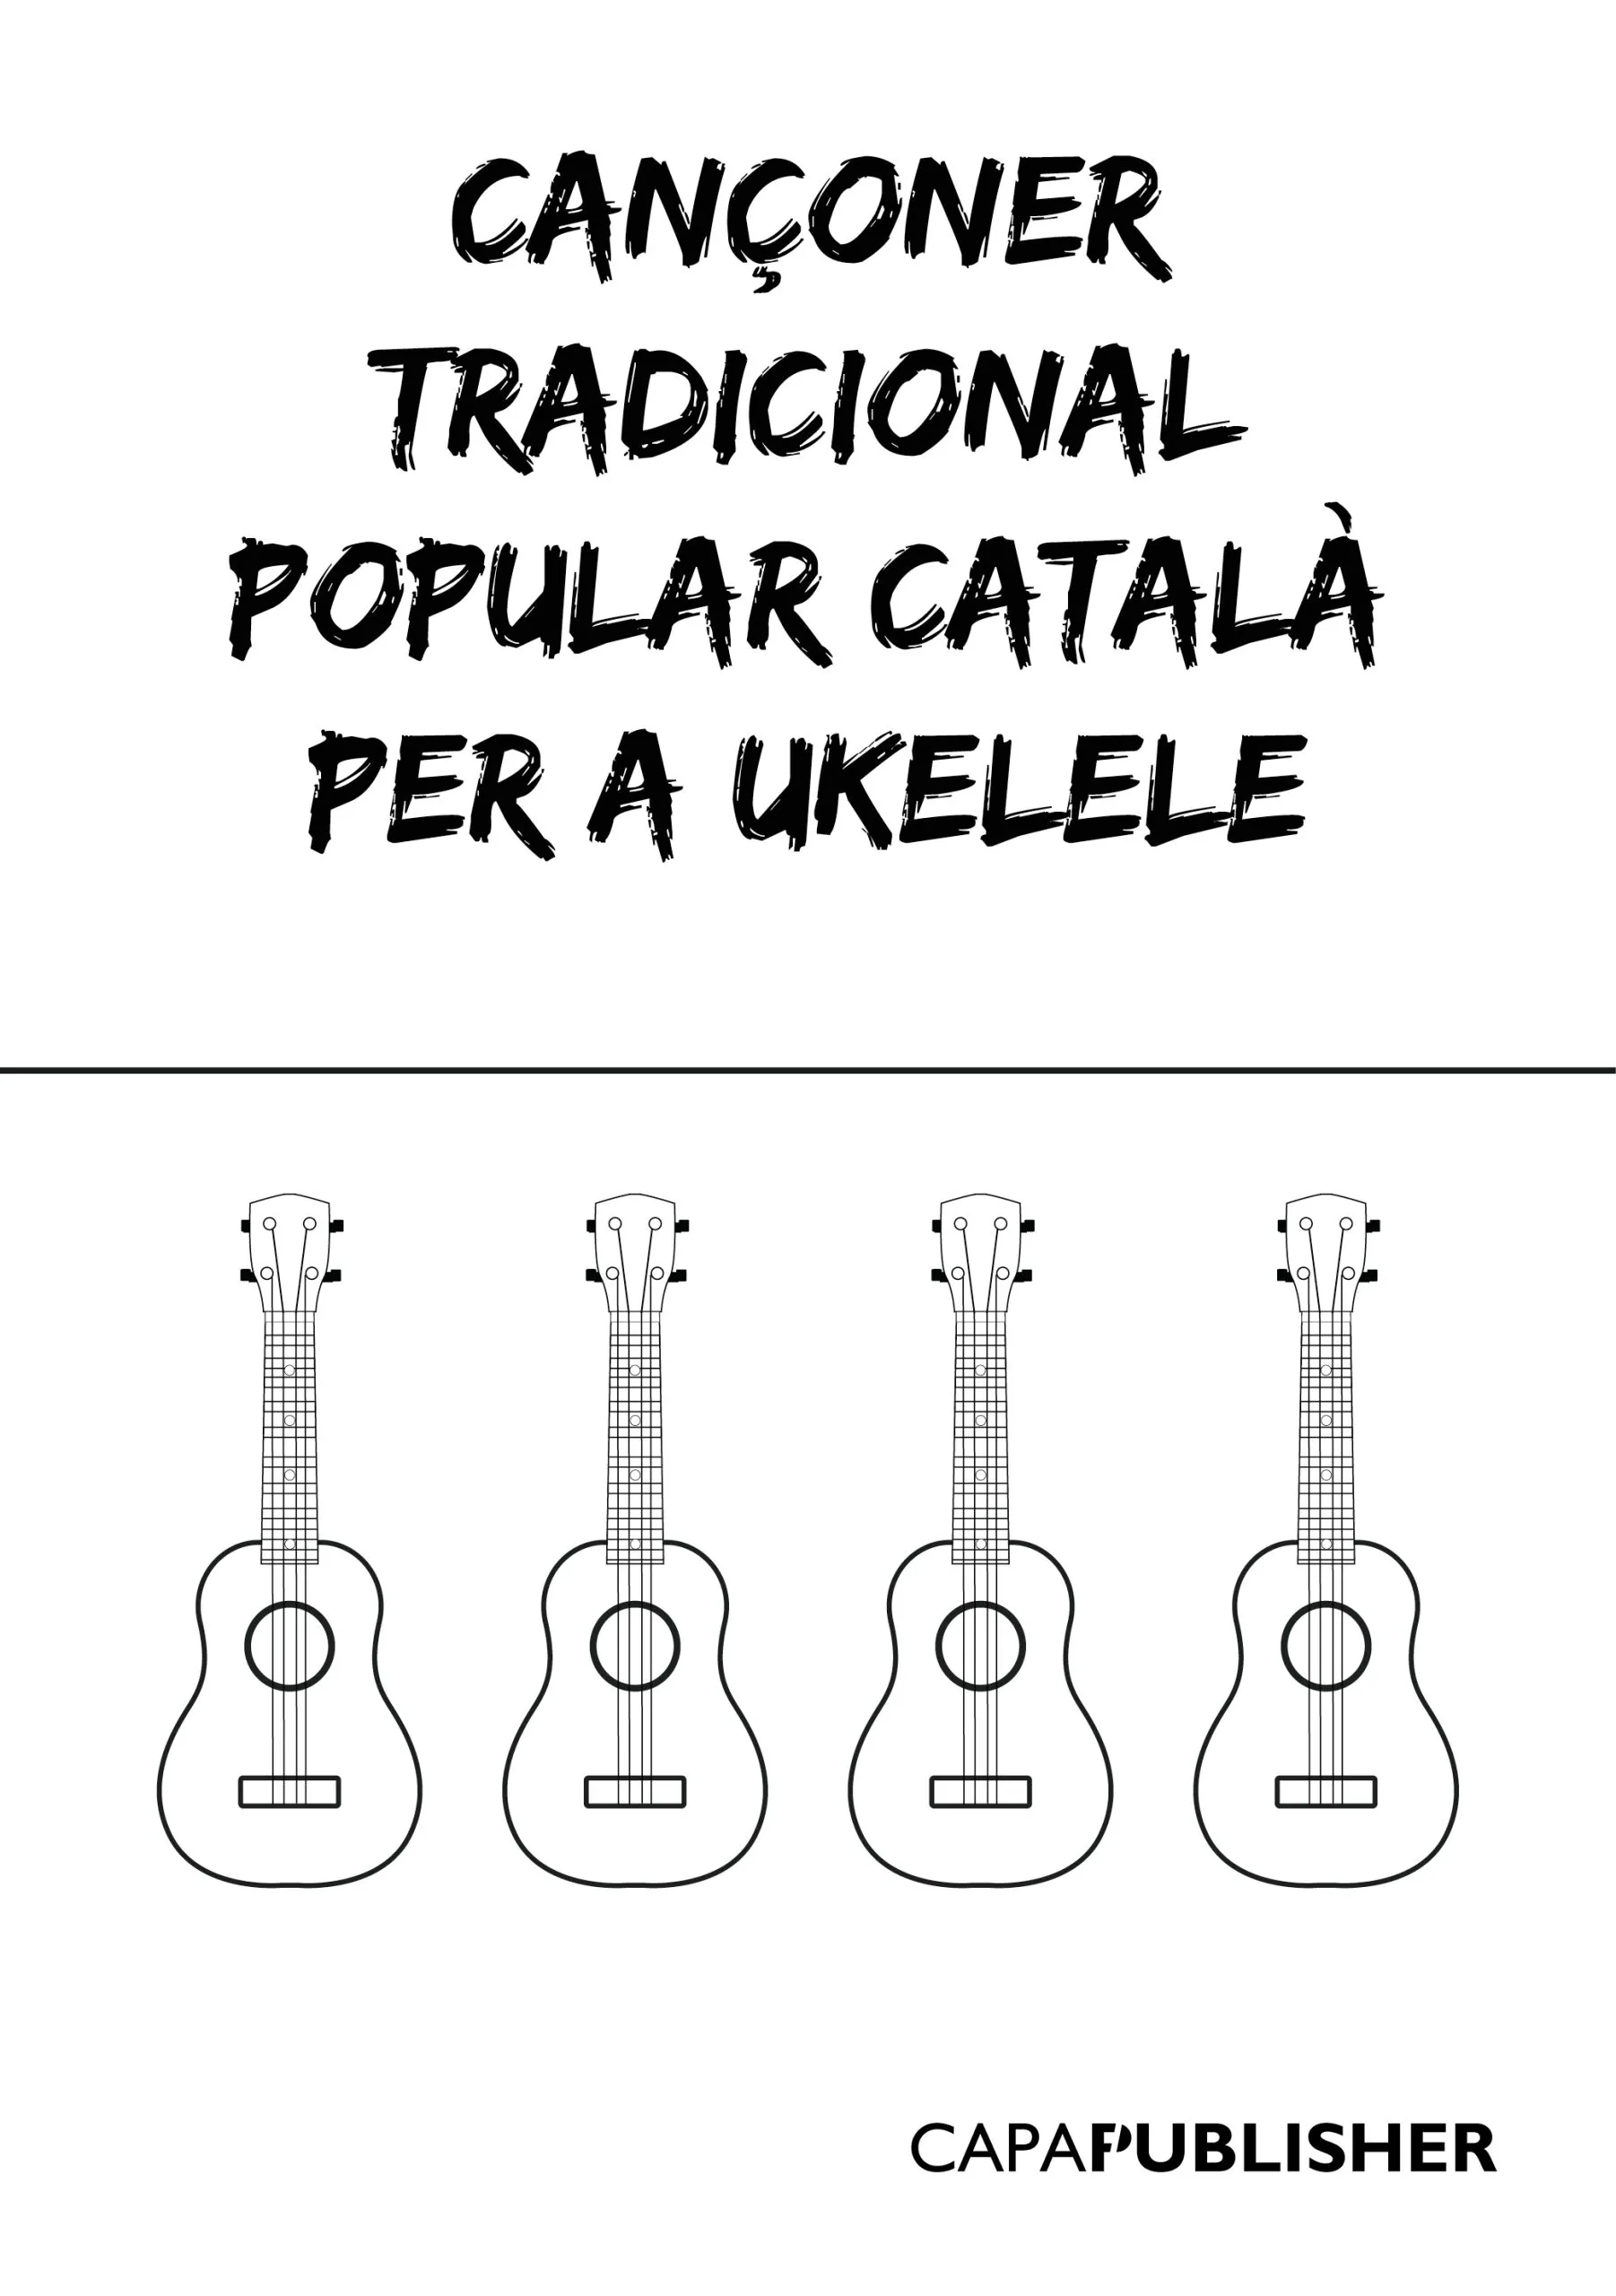 Cançoner popular tradicional català per a ukelele Mida B5